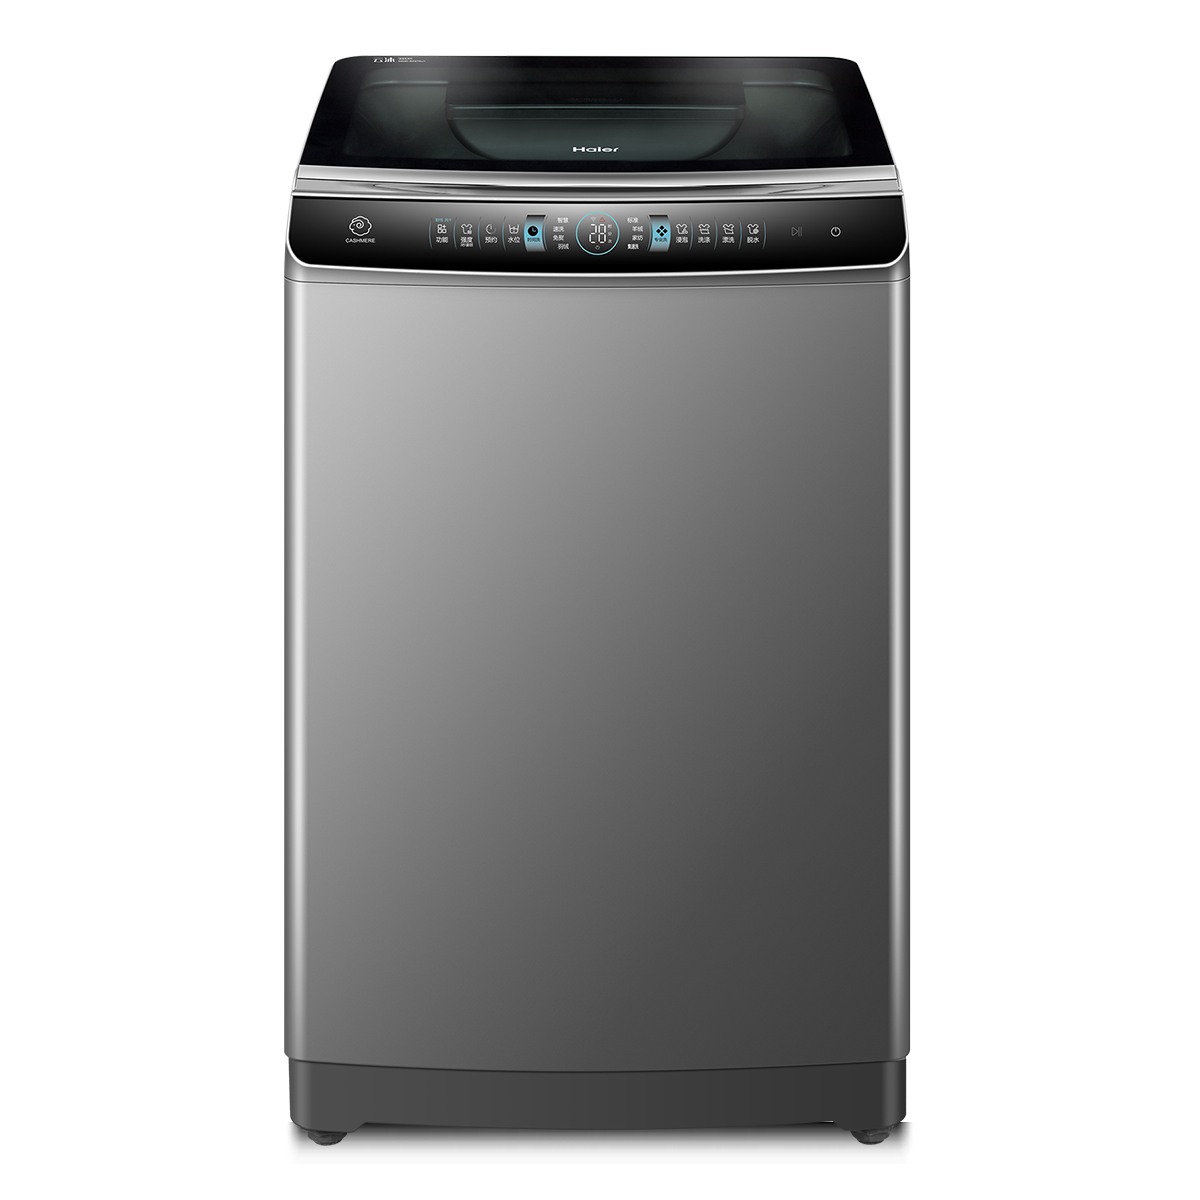 海尔Haier洗衣机 MS90-BZ976U1 说明书